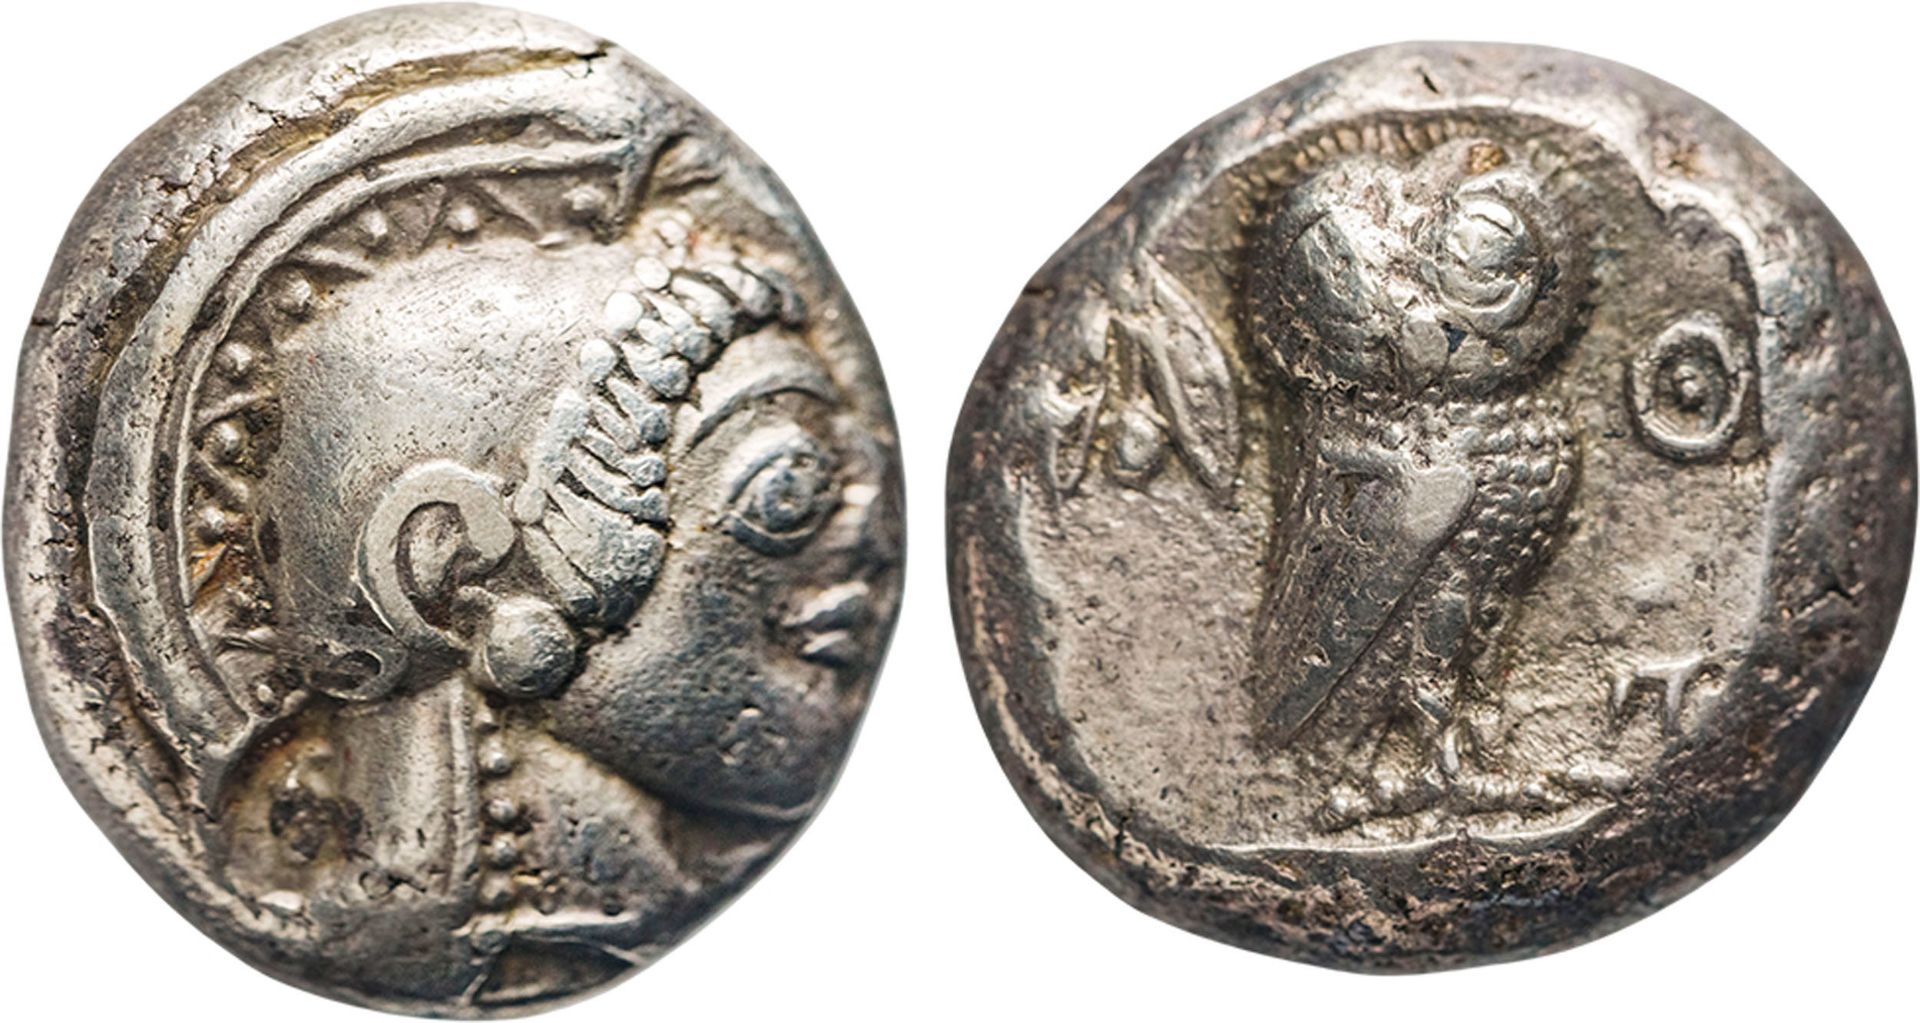 MONETE GRECHE. ATTICA. ATENE (594-560 A.C.). TETRADRACMA ARCAICA